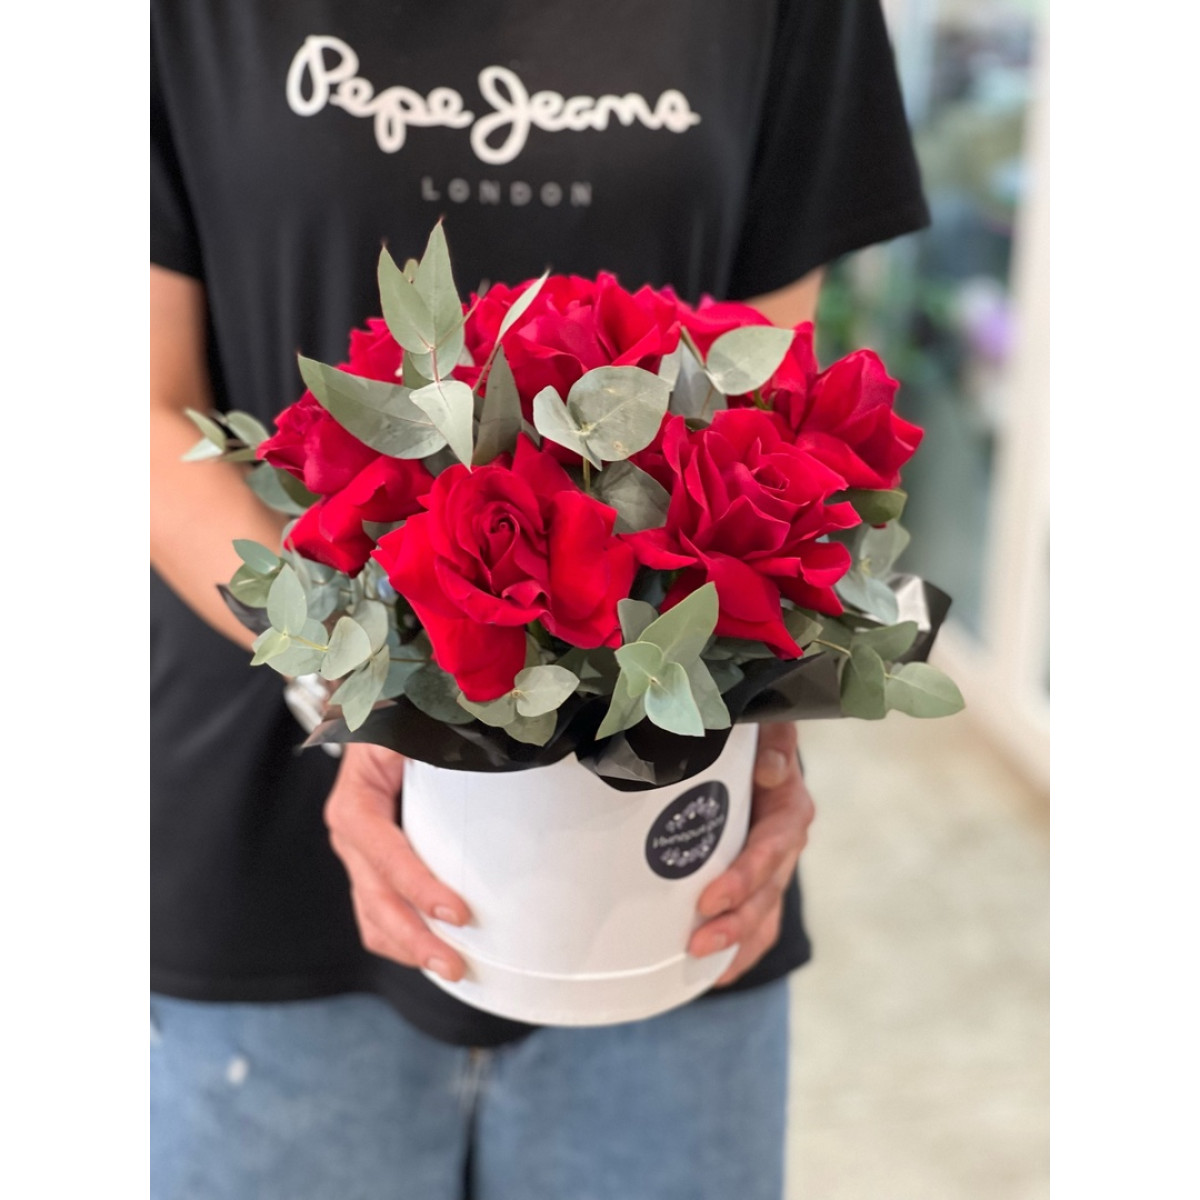 9 красных французских роз в боксе